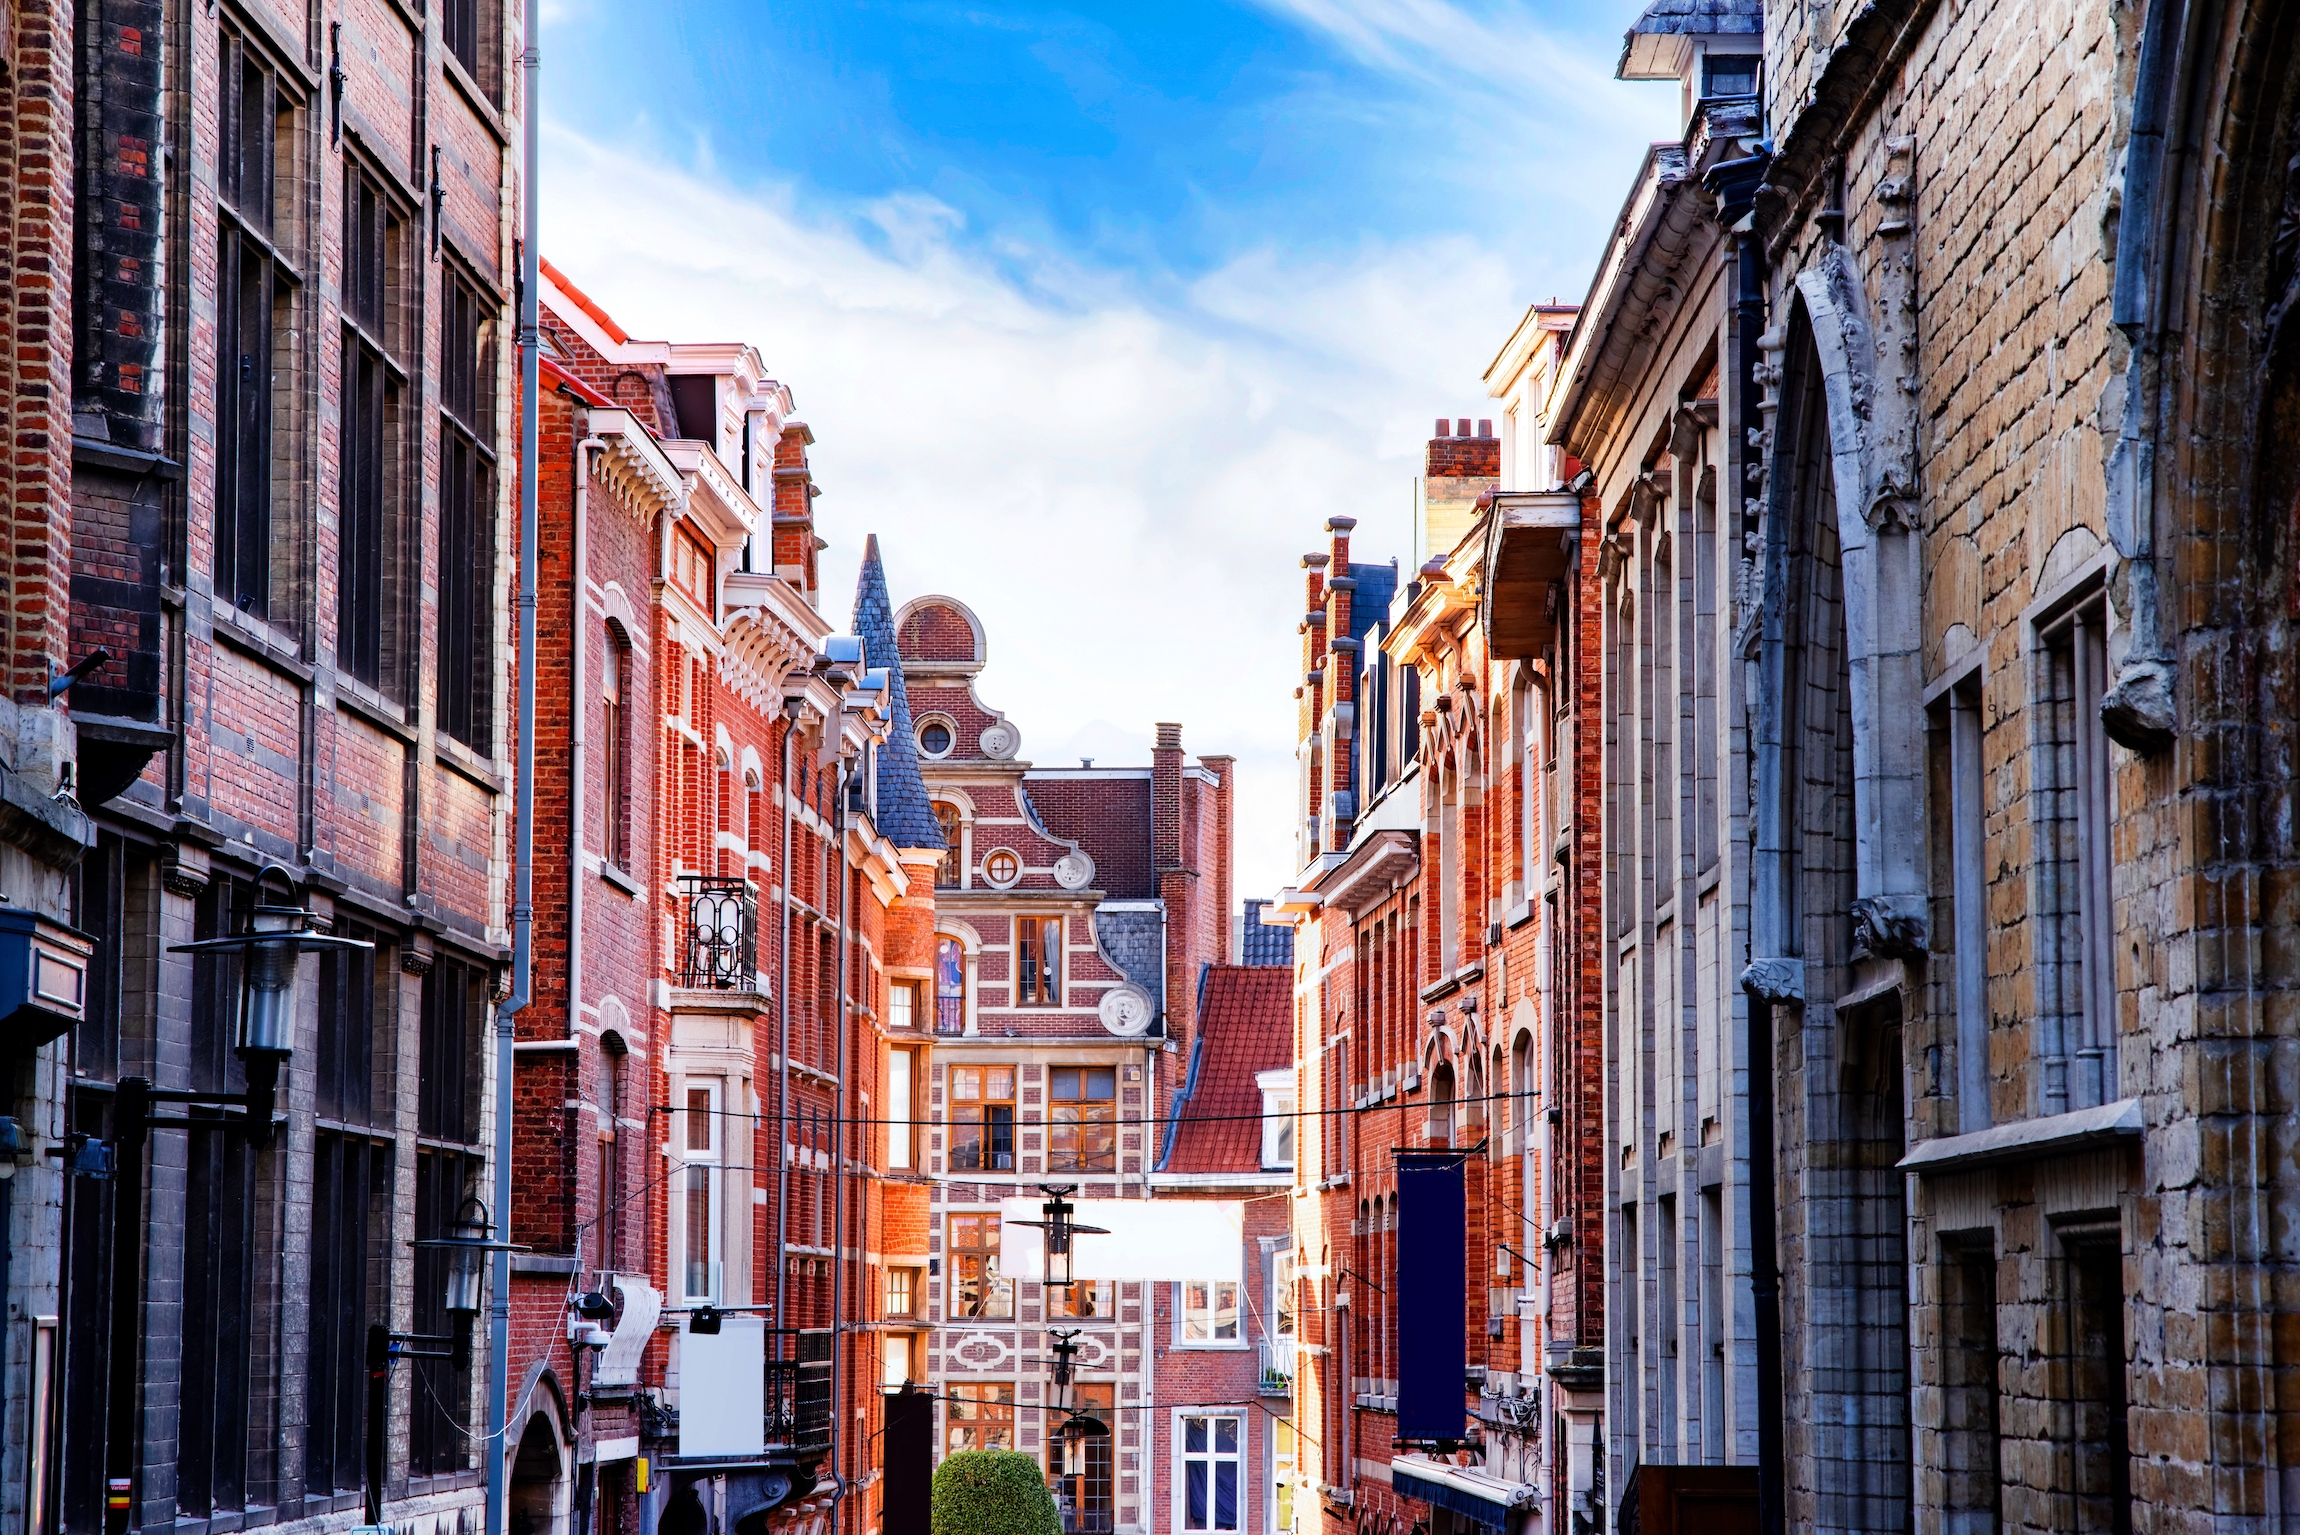 Pejzaż miejski z tradycyjnymi fasadami w Leuven, Belgia